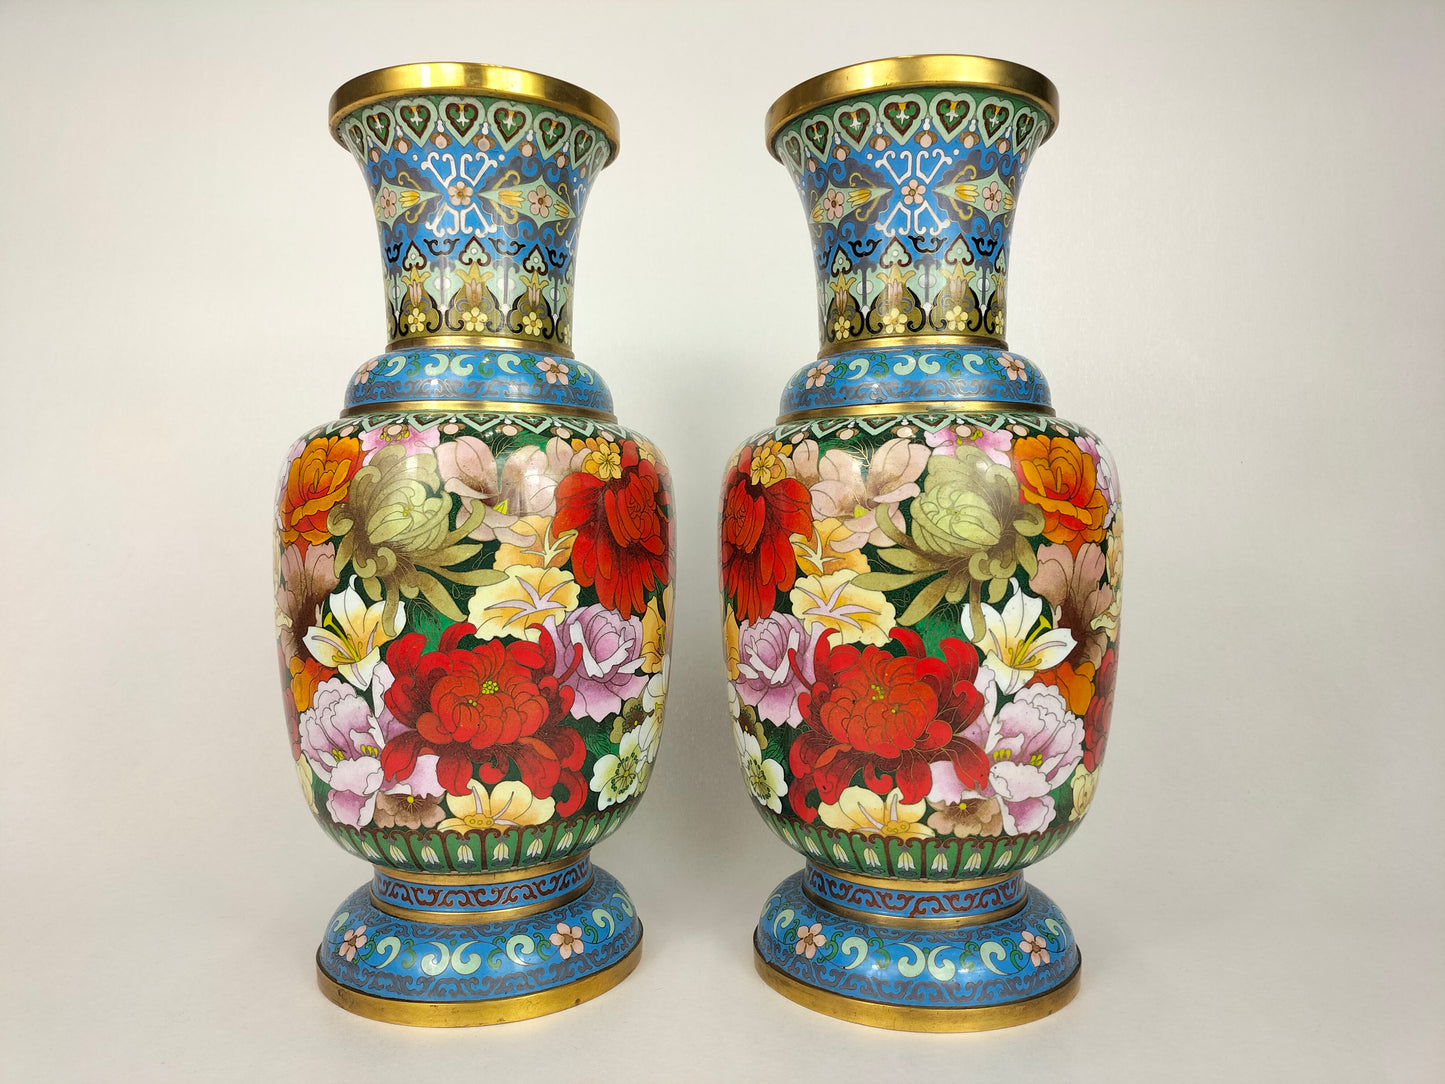 Grande paire de vases millefleurs cloisonnés chinois // 20ème siècle